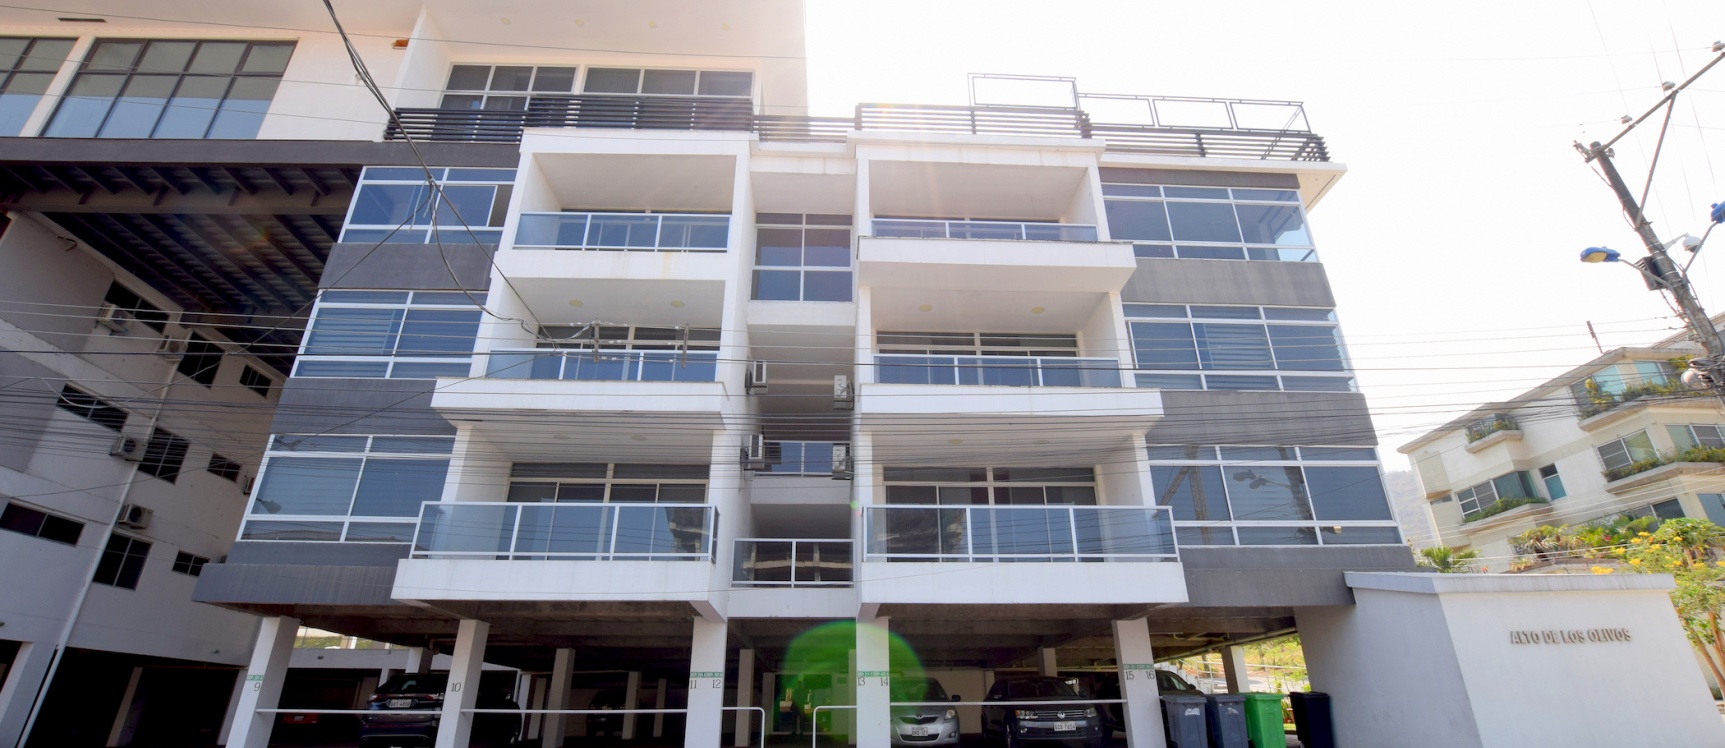 GeoBienes - Departamento en alquiler ubicado en Olivos II, Norte de Guayaquil - Plusvalia Guayaquil Casas de venta y alquiler Inmobiliaria Ecuador